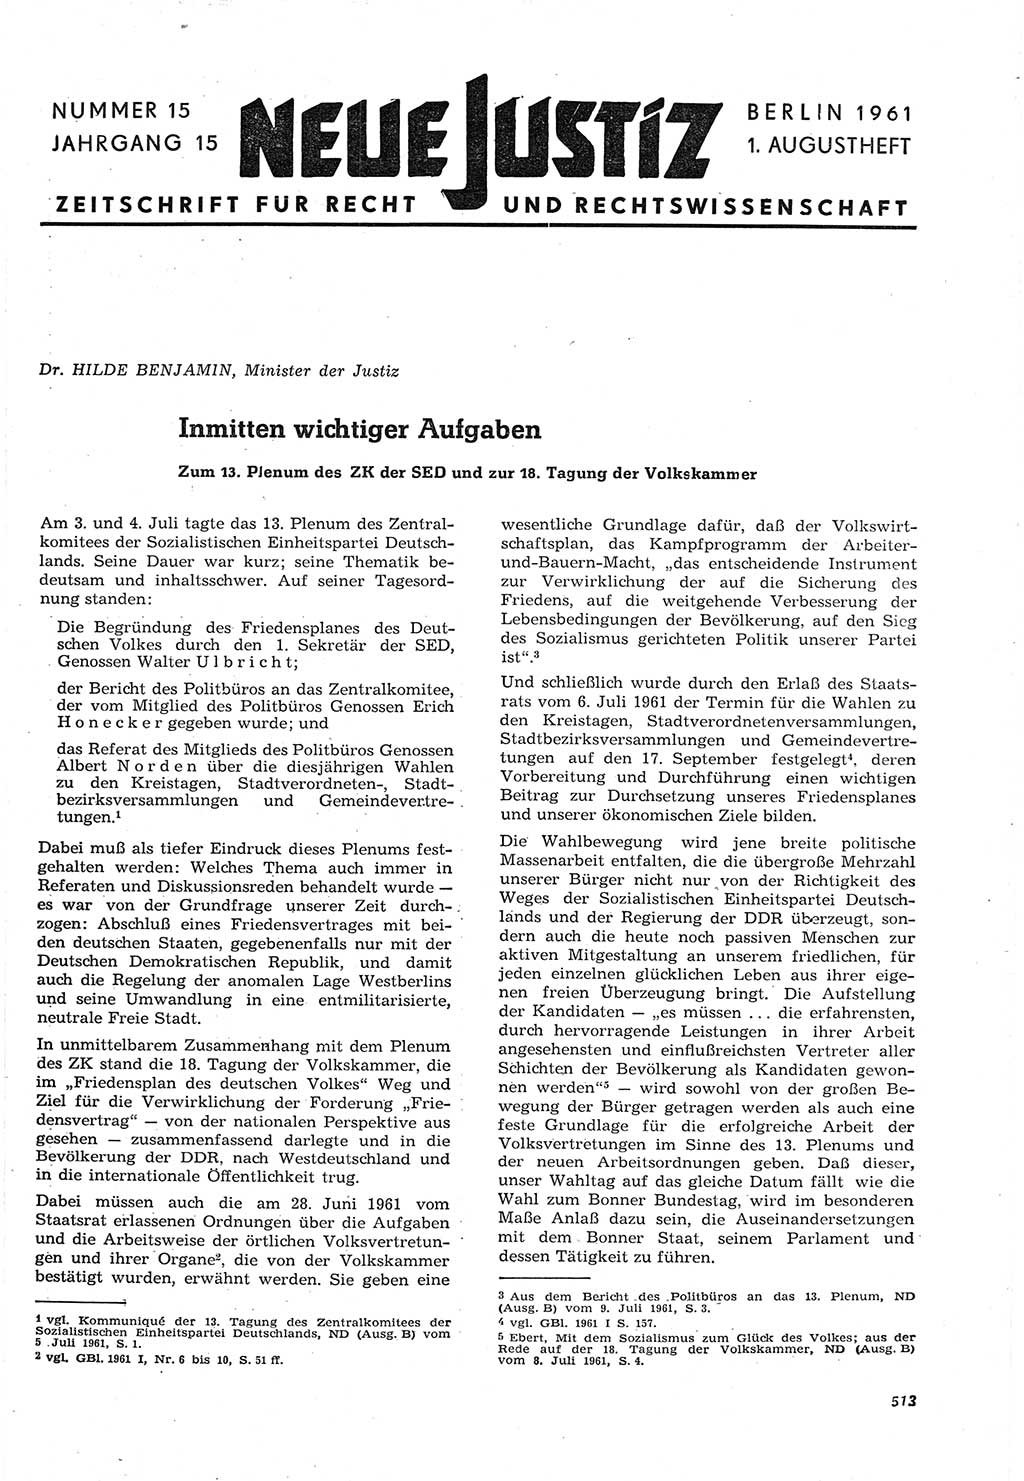 Neue Justiz (NJ), Zeitschrift für Recht und Rechtswissenschaft [Deutsche Demokratische Republik (DDR)], 15. Jahrgang 1961, Seite 513 (NJ DDR 1961, S. 513)